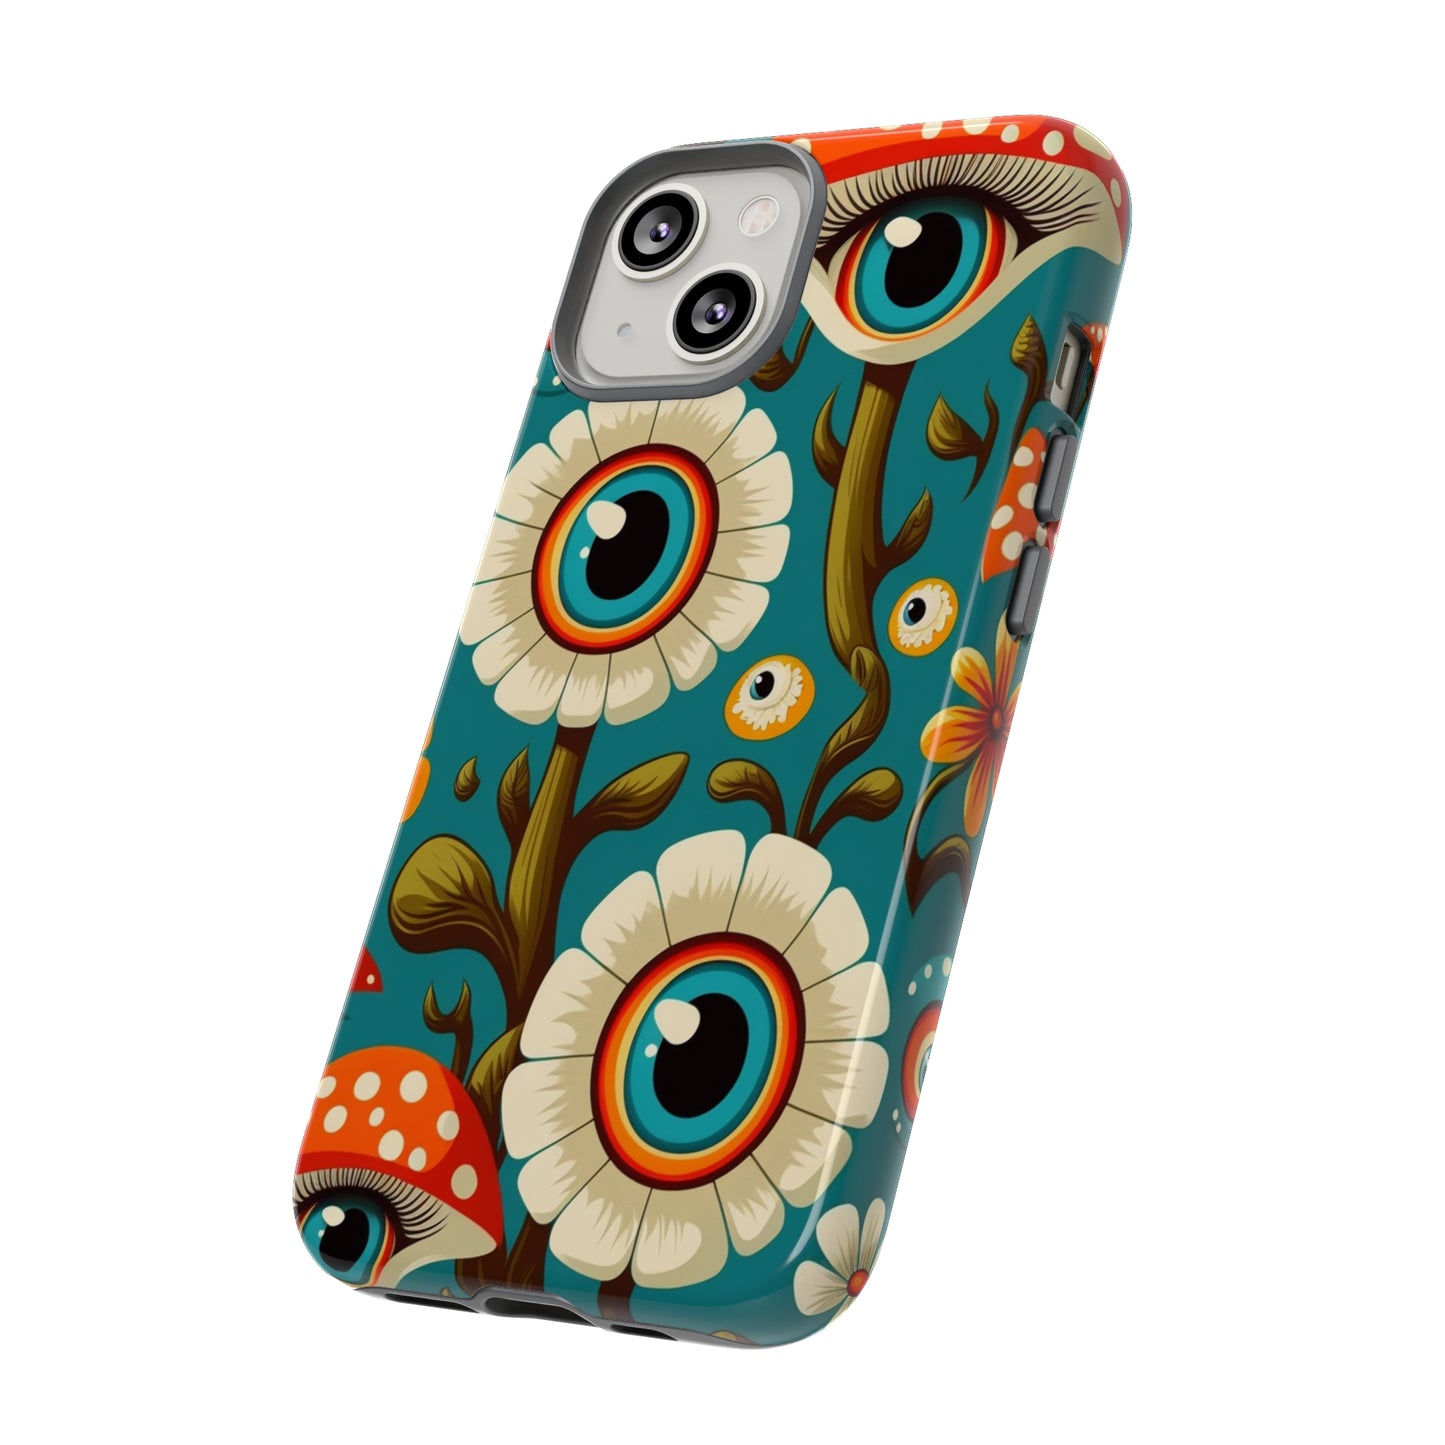 Mushroom iPhone case